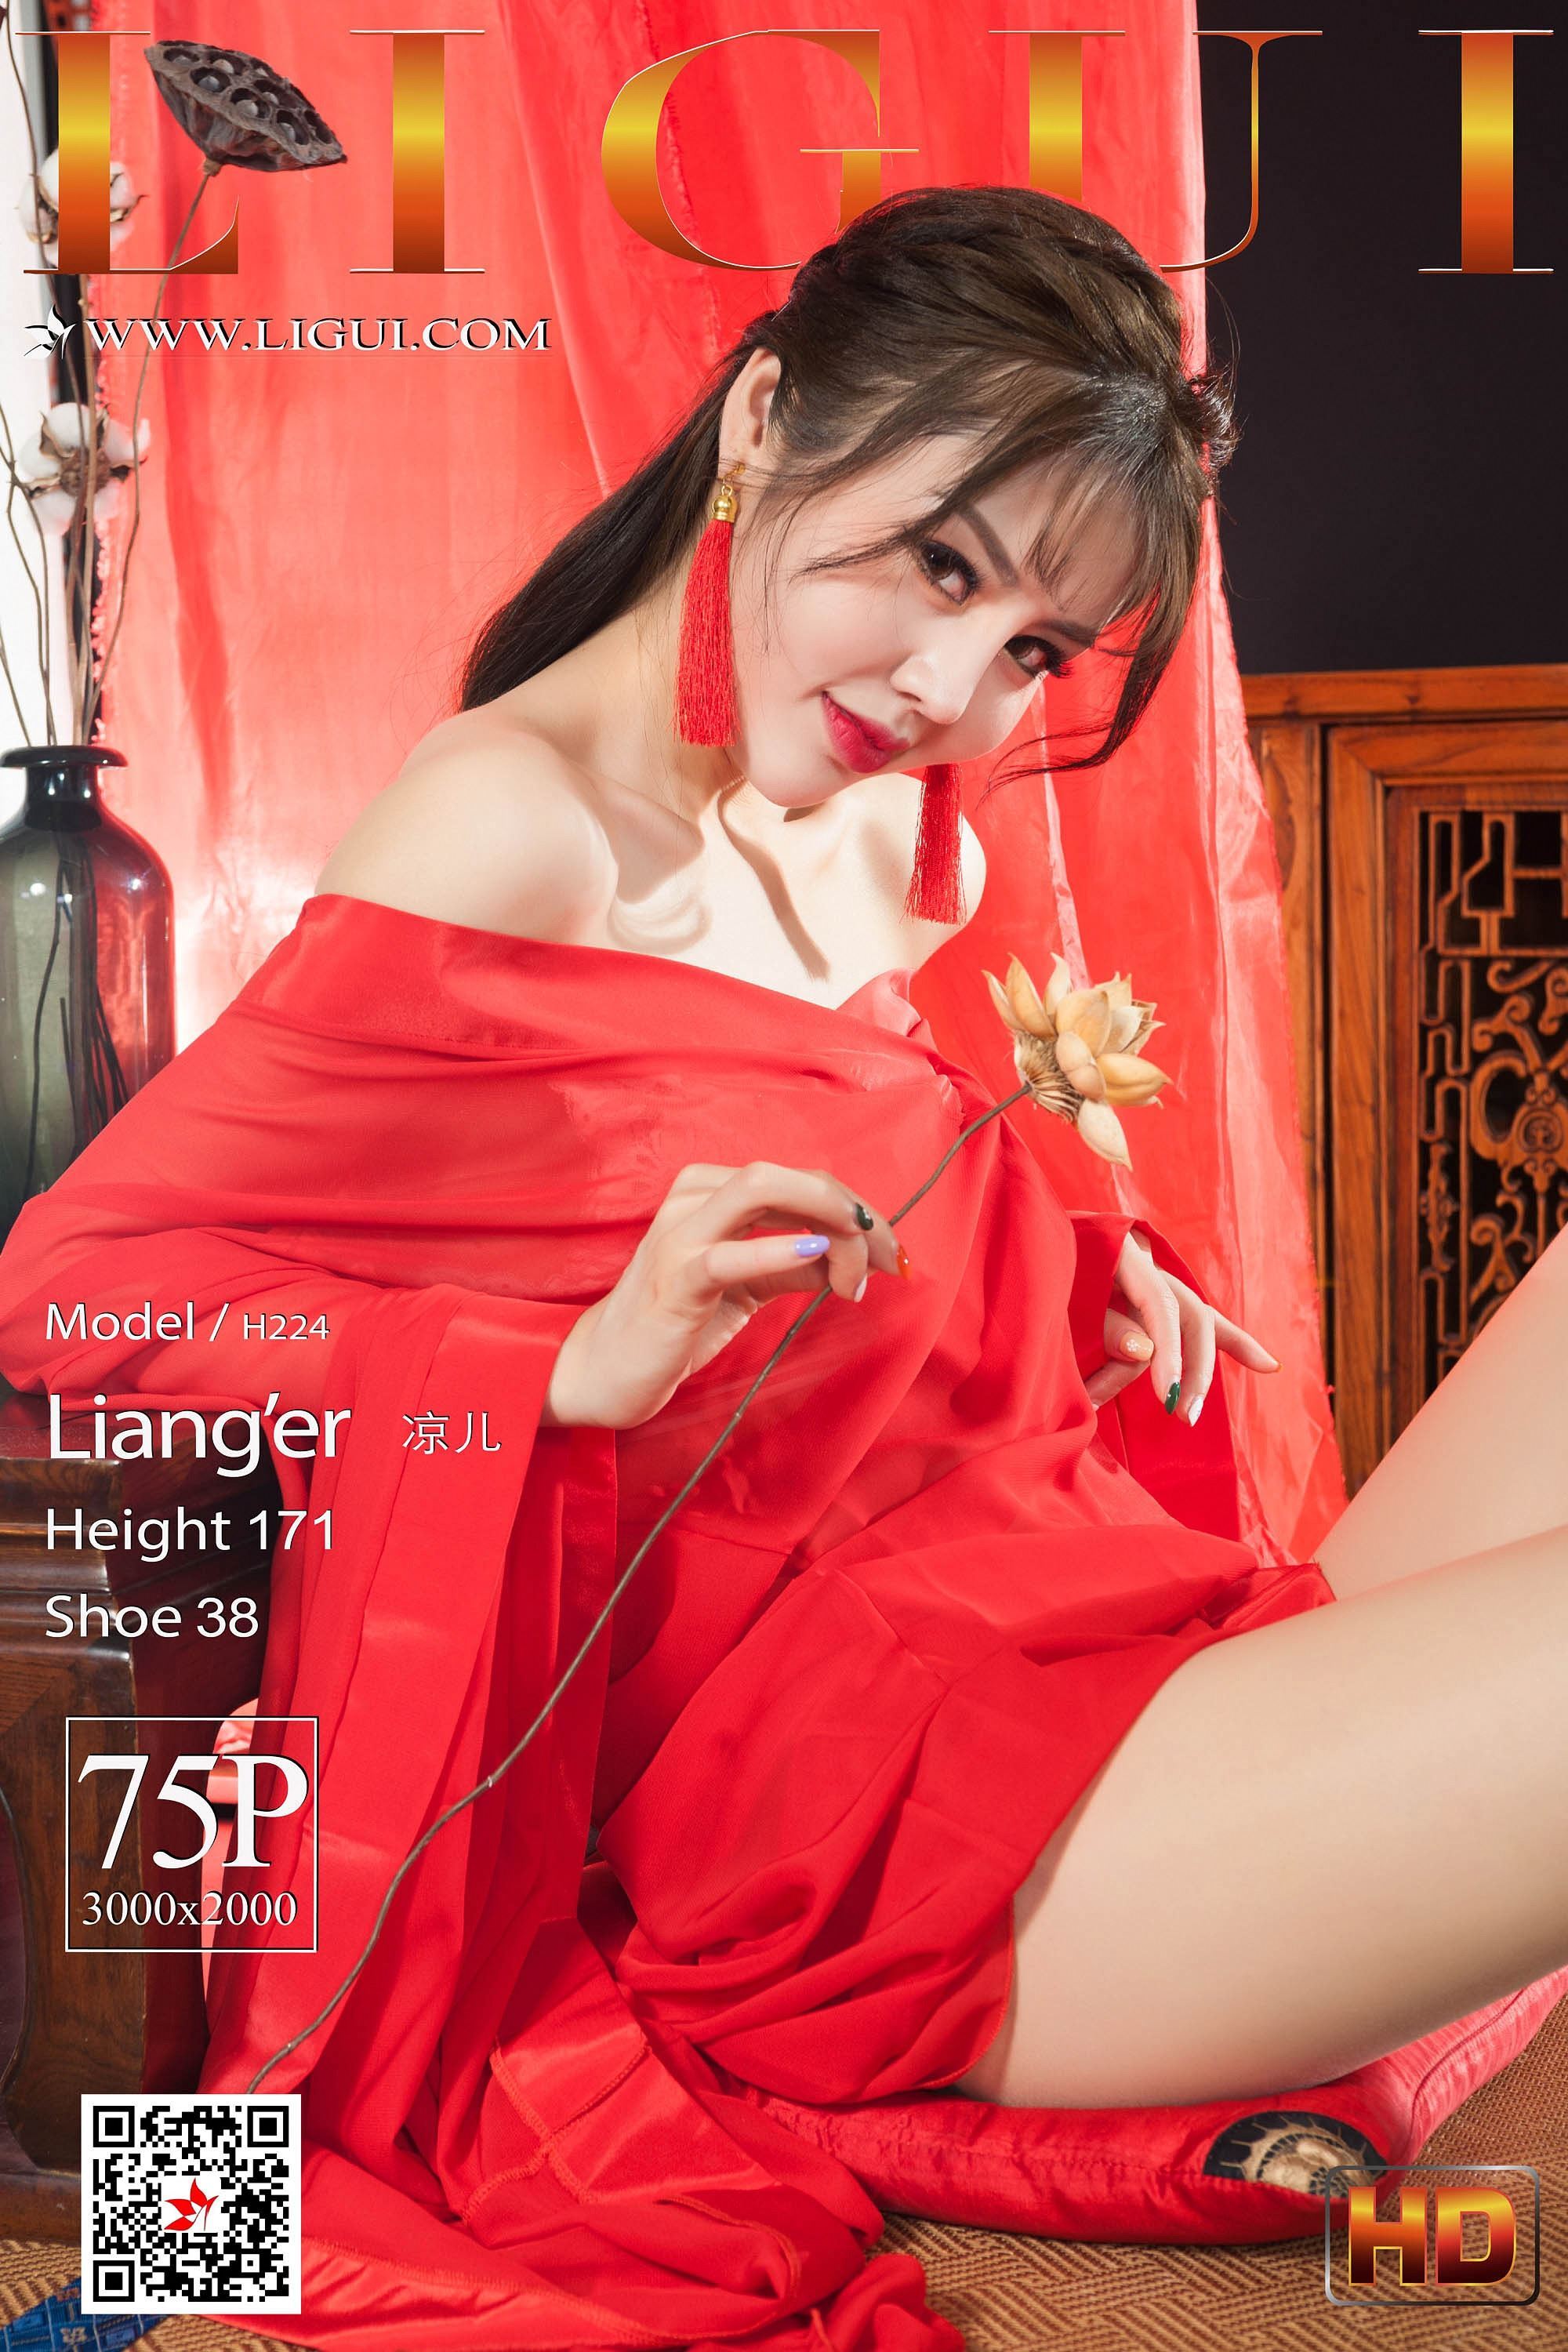 Li Gui Li cabinet 2020.01.31 network beauty model Liang er